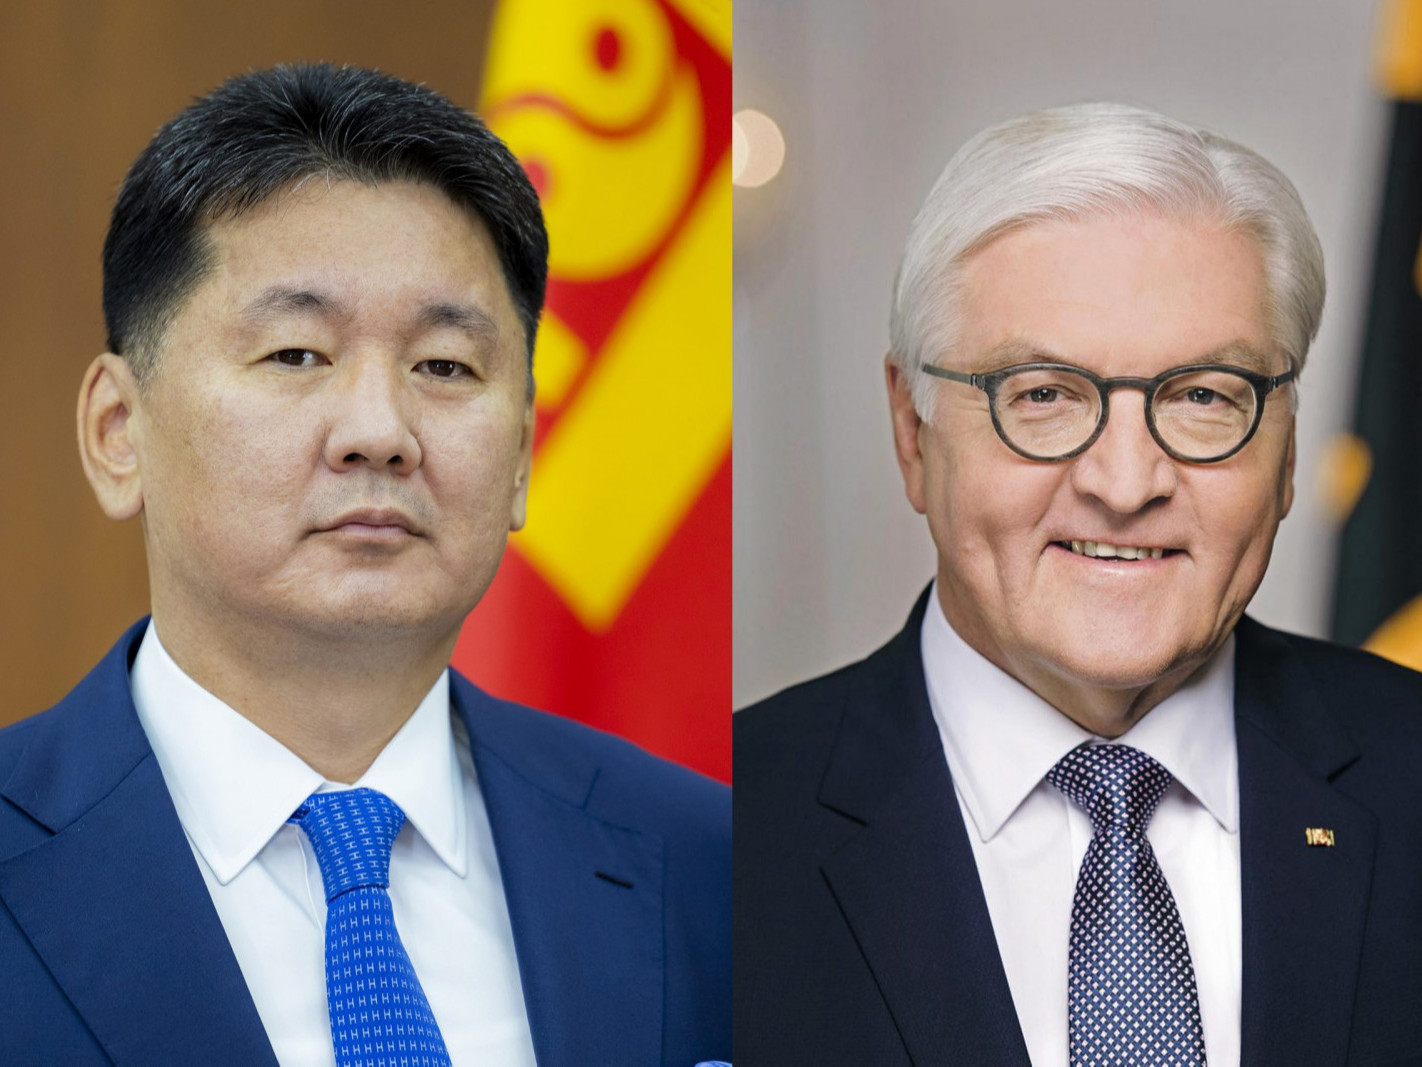 ШУУРХАЙ: "Германы Ерөнхийлөгч ирэх долоо хоногт Монгол Улсад төрийн айлчлал хийнэ" гэж албан ёсоор мэдэгдлээ